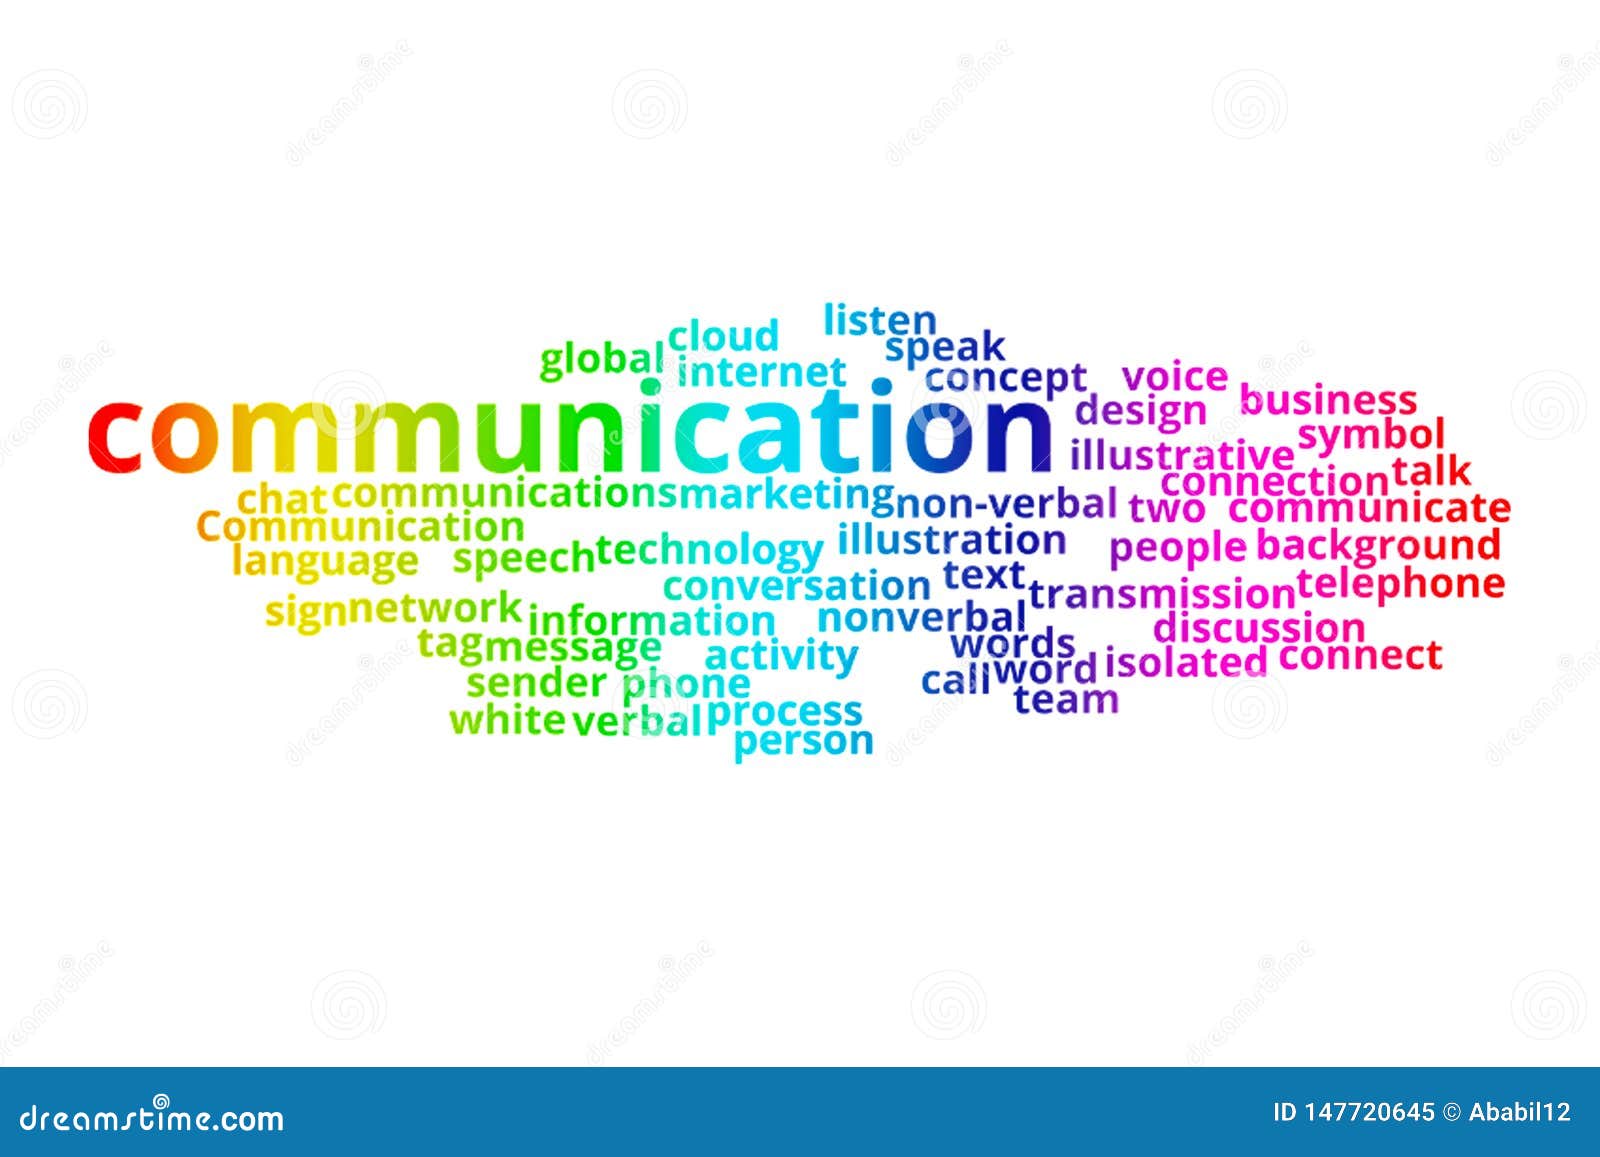 Слово общение по буквам. Communication слово. Communicate слово. Слова communication на английском. Слова из слова communication.